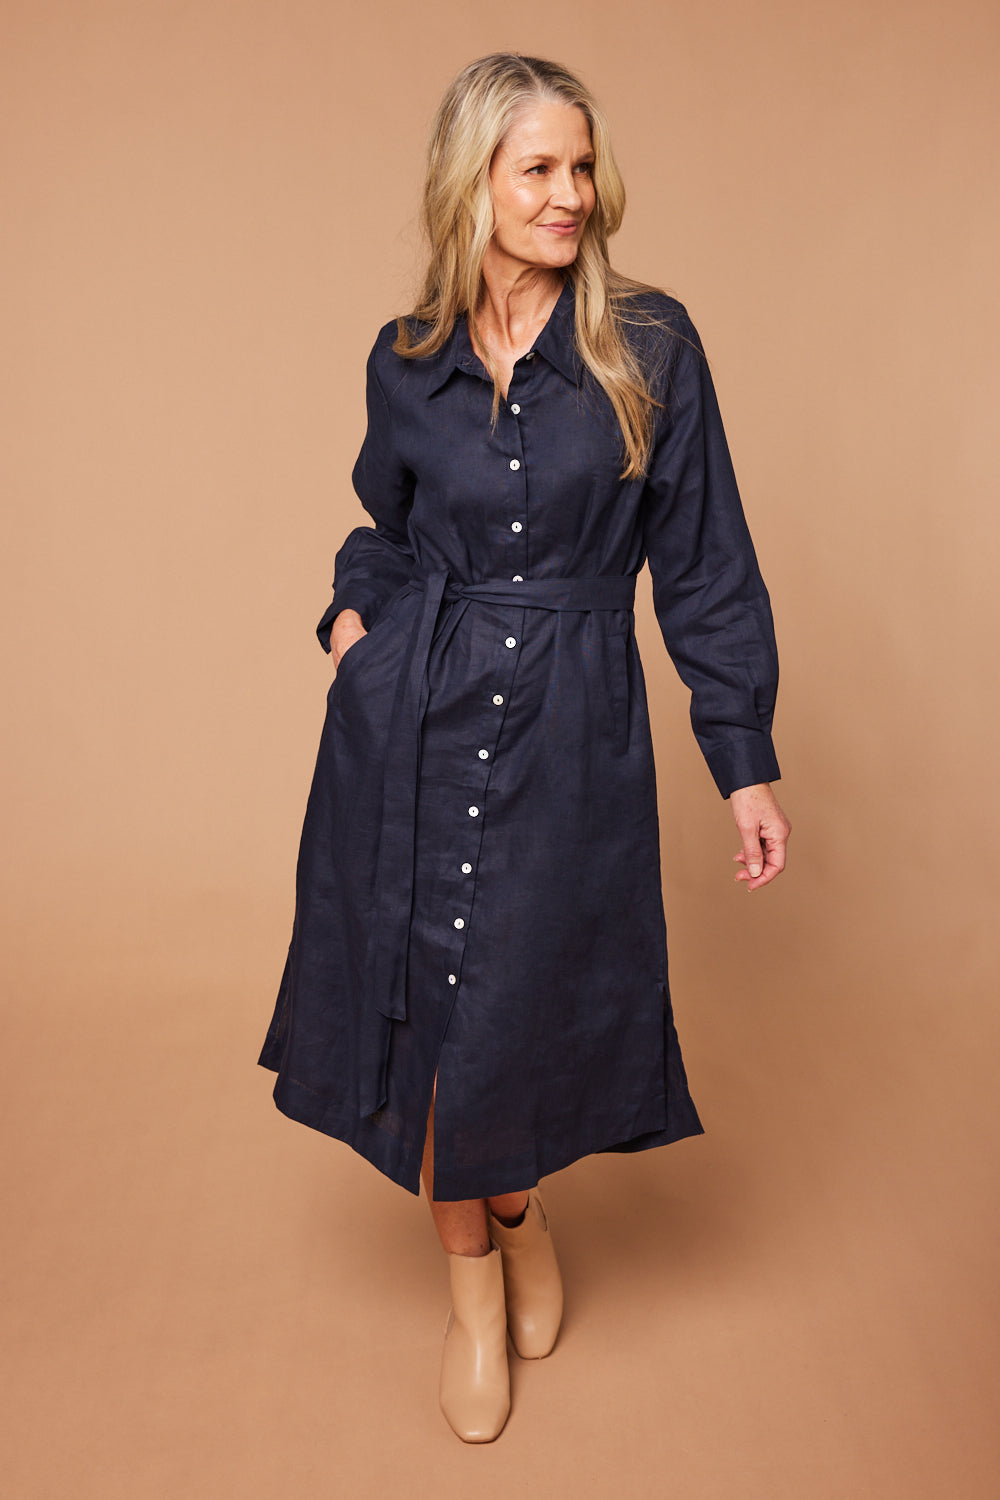 Basics by Adrift Abbey Linen Shirt Dress in Navy - Linen, Button Down ...